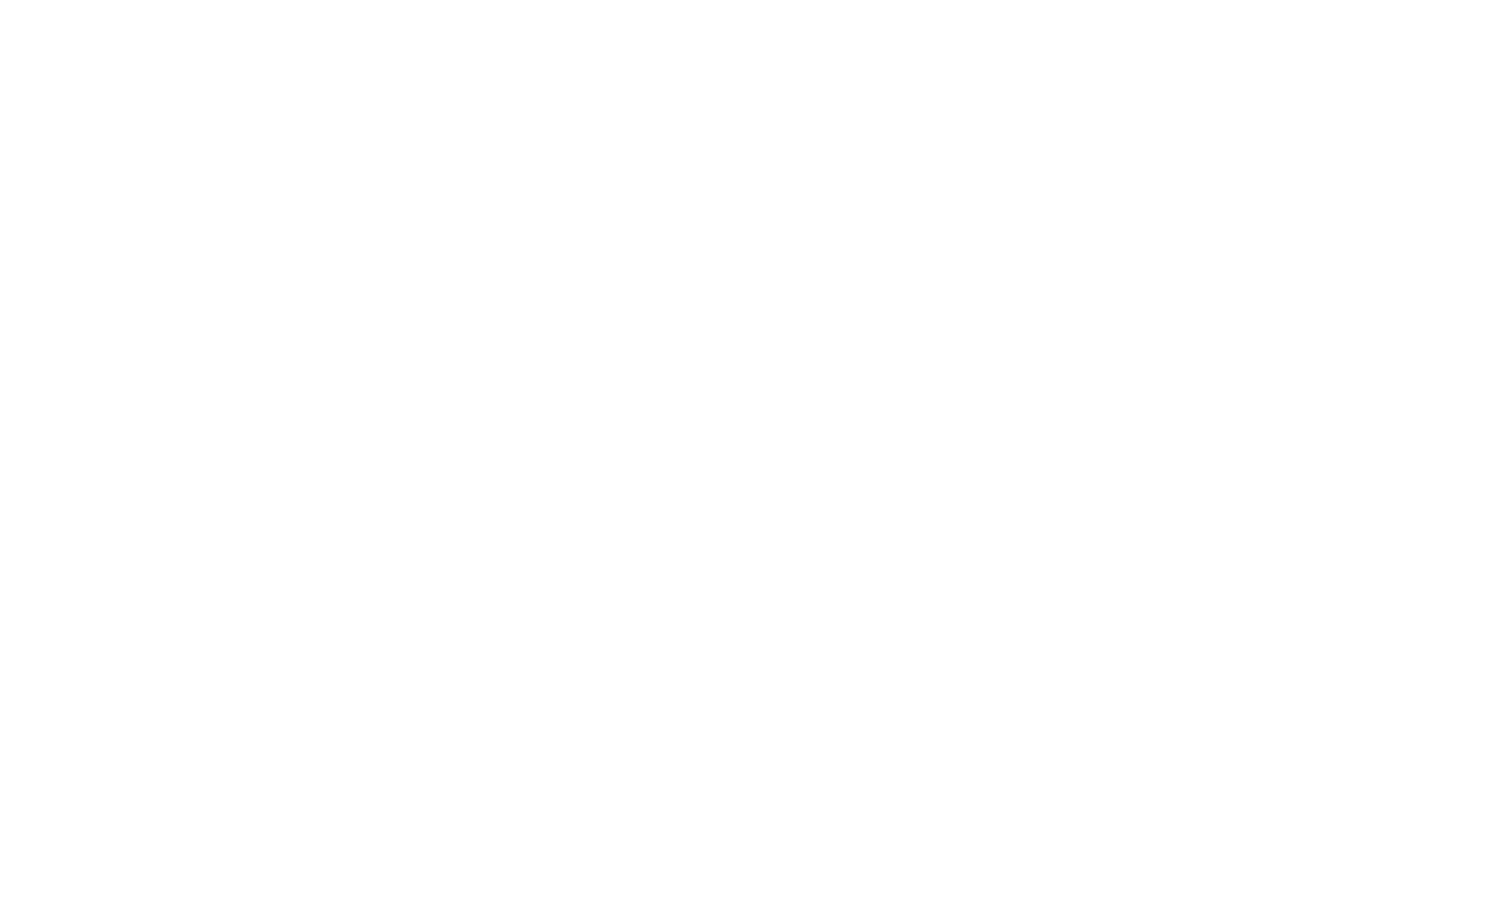 JONES, GREEN, & TACKETT LAW, PLLC